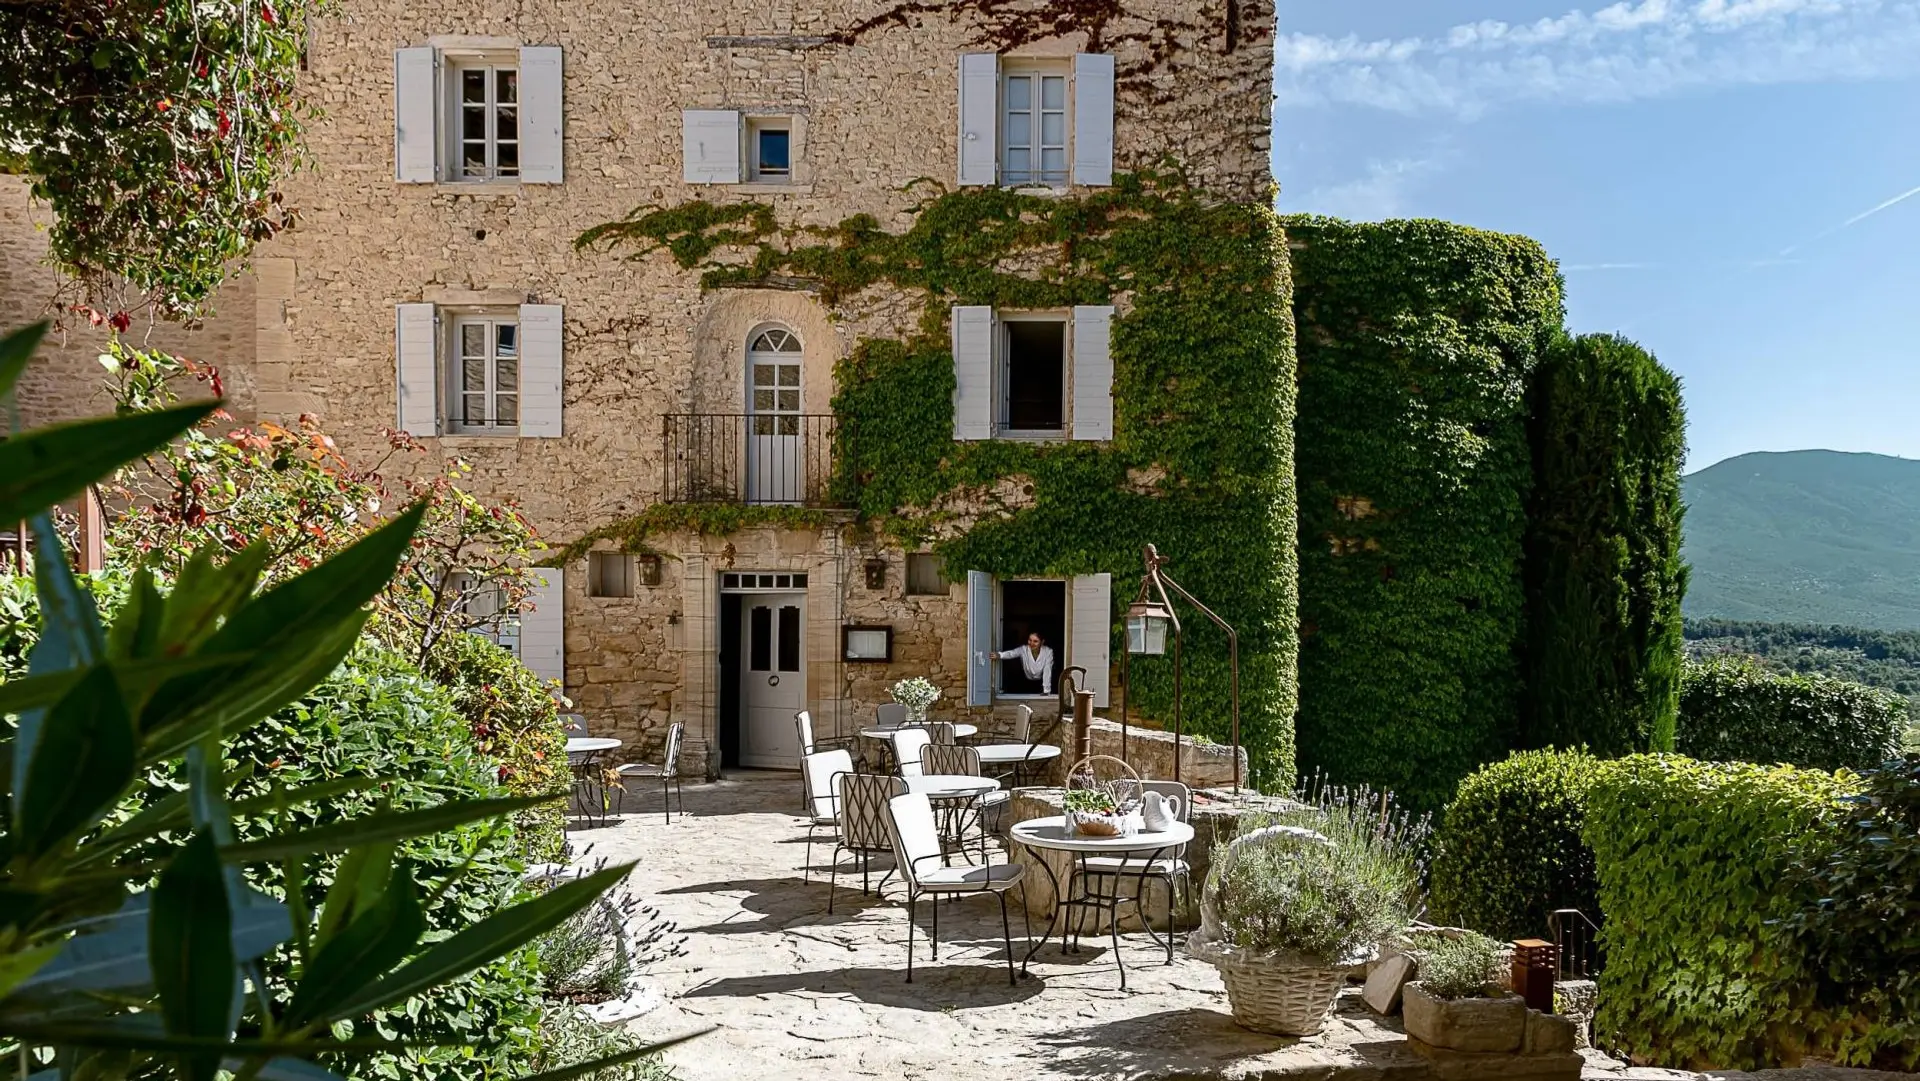 Hotel review Restaurants & Bars' - Hôtel Crillon le Brave - Provence - 2